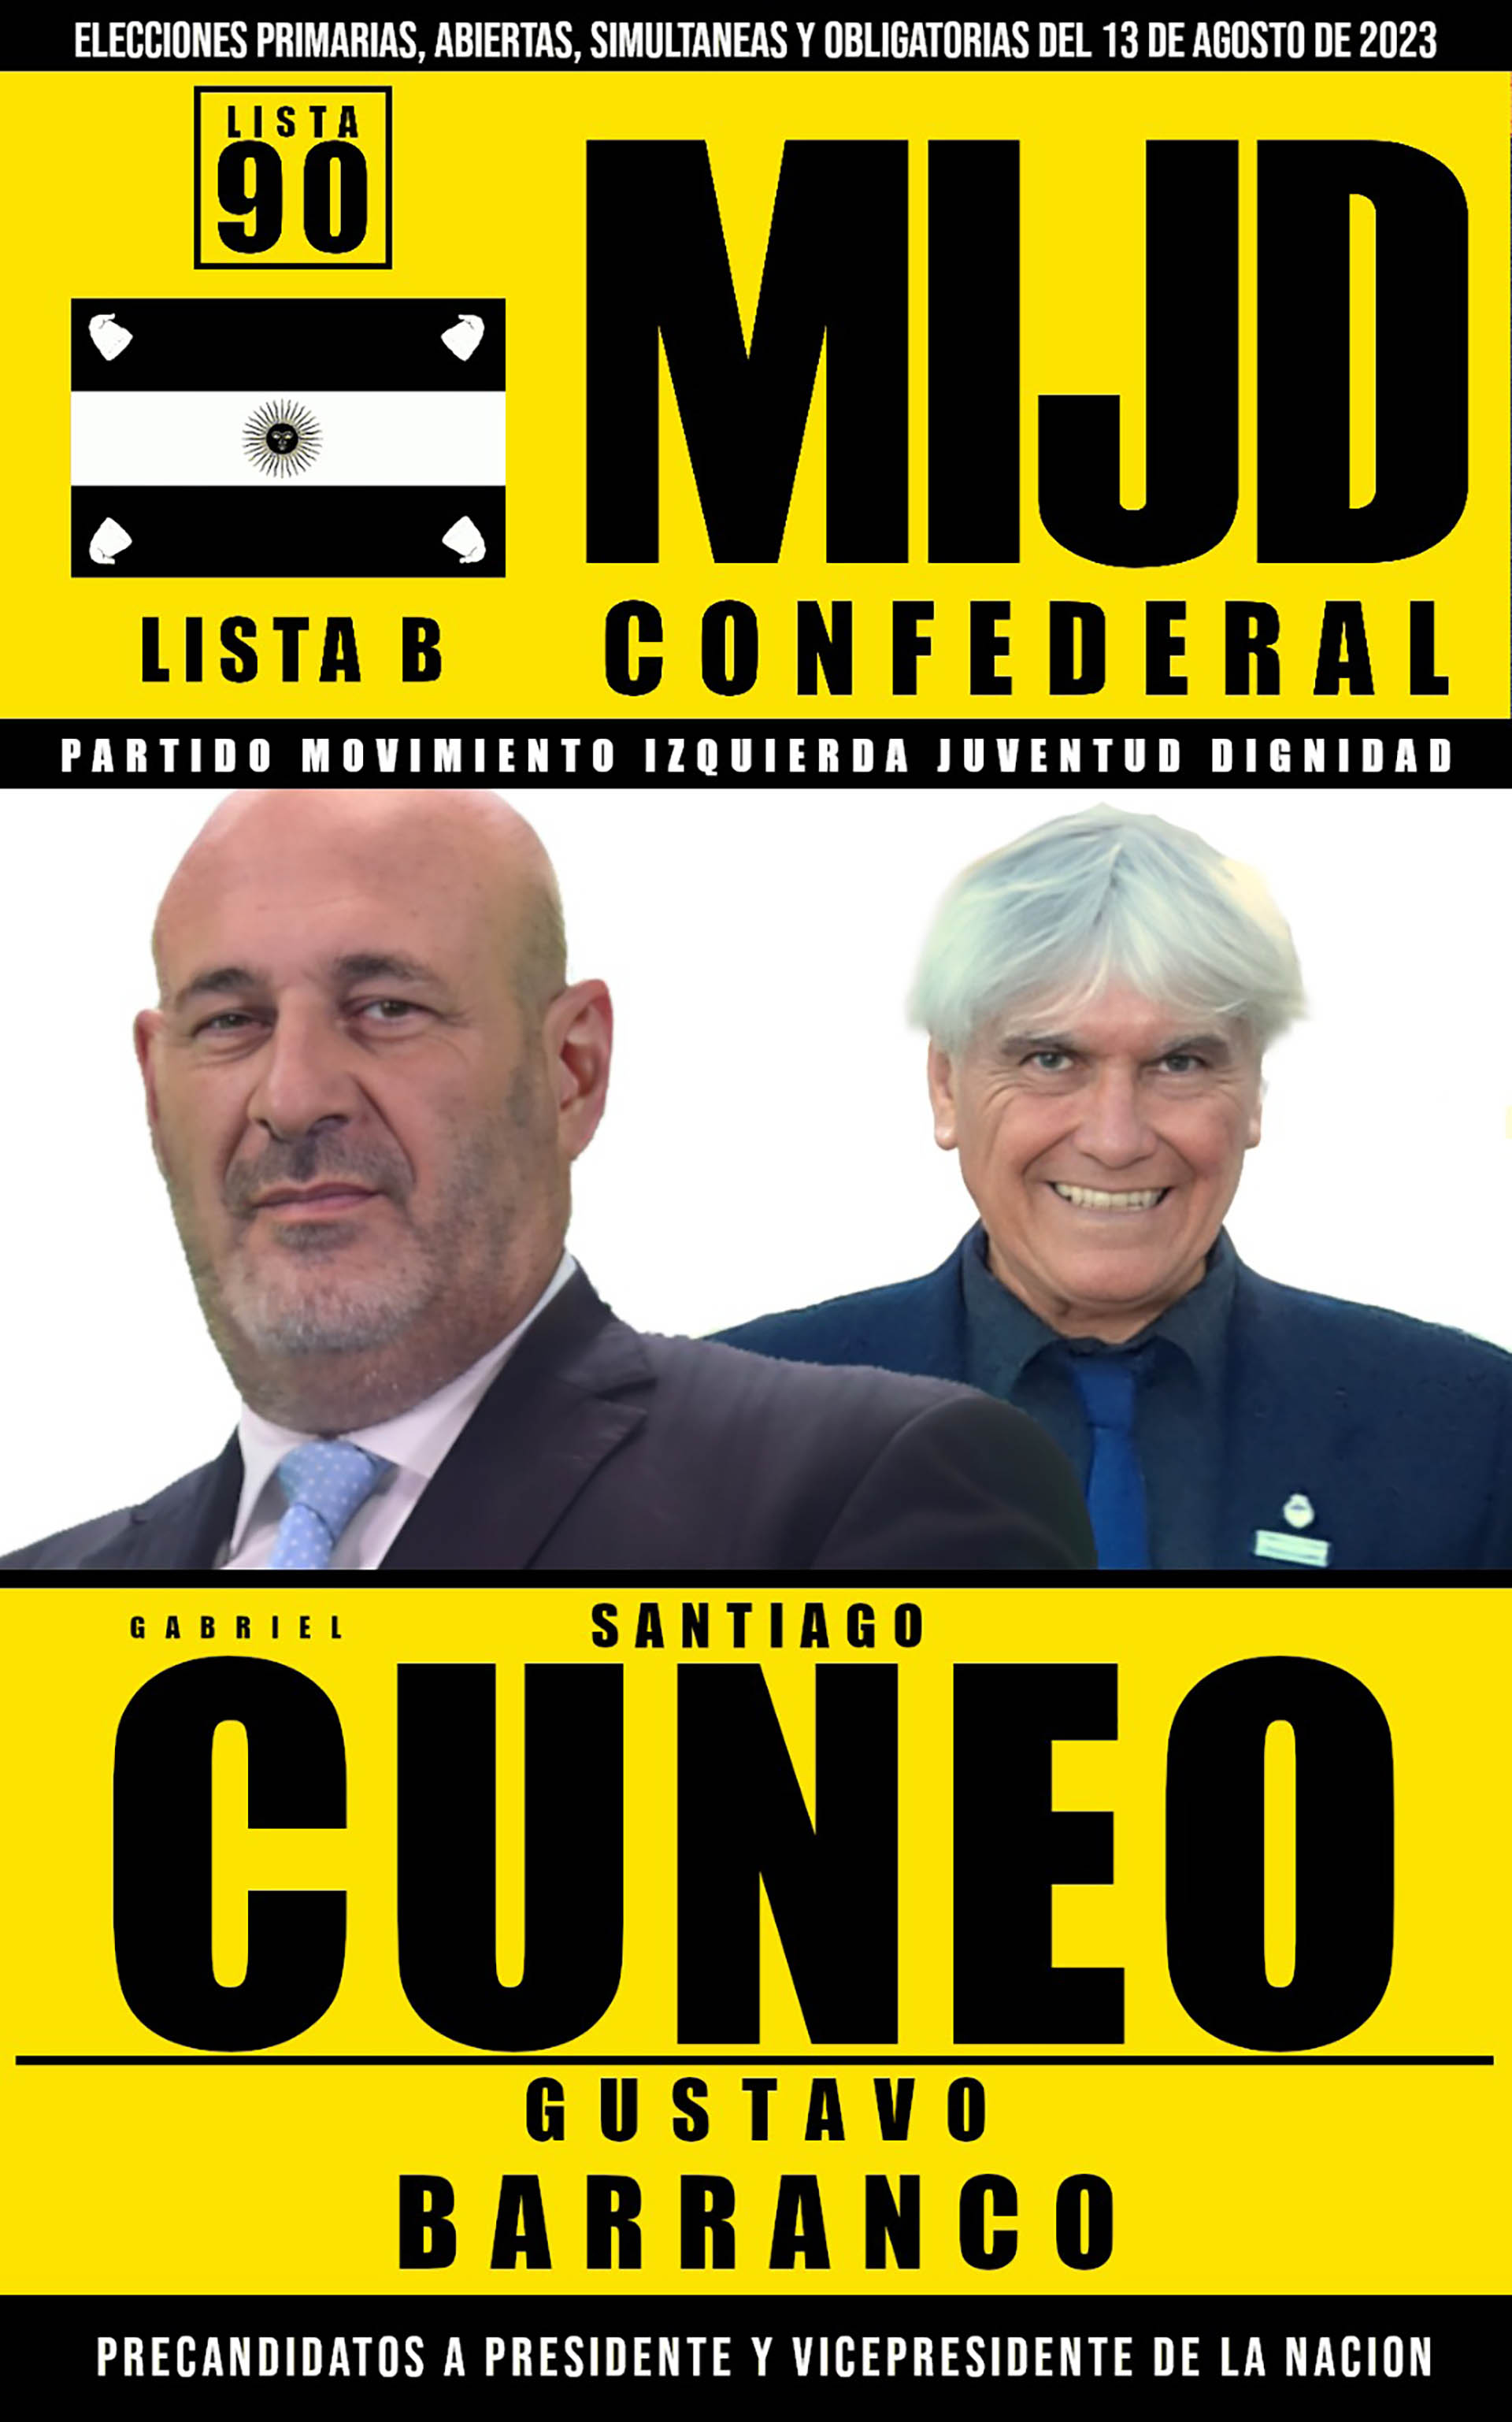 Santiago Cúneo y Gustavo Barranco, precandidatos a presidente y vicepresidente por el Movimiento Izquierda Juventud Dignidad